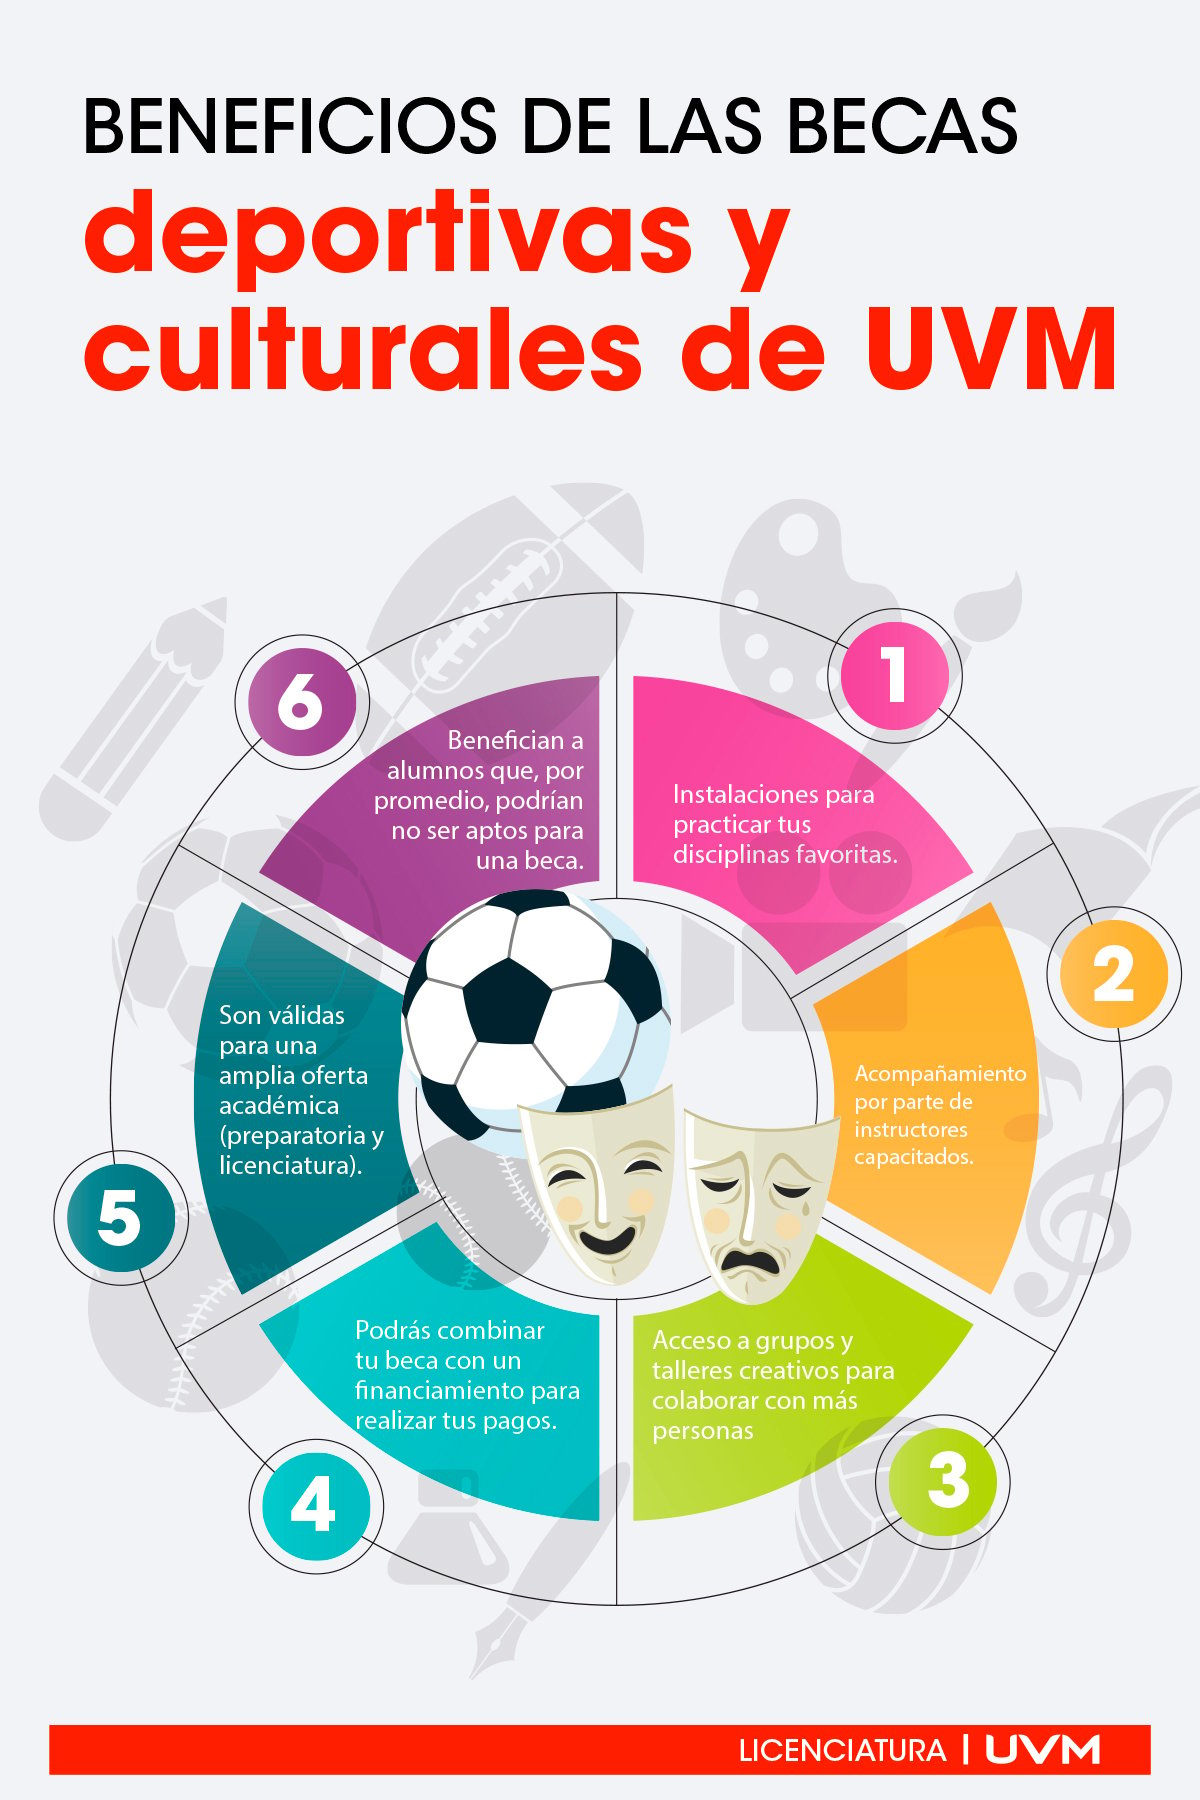 ¿Cuáles son los beneficios de las becas culturales UVM?